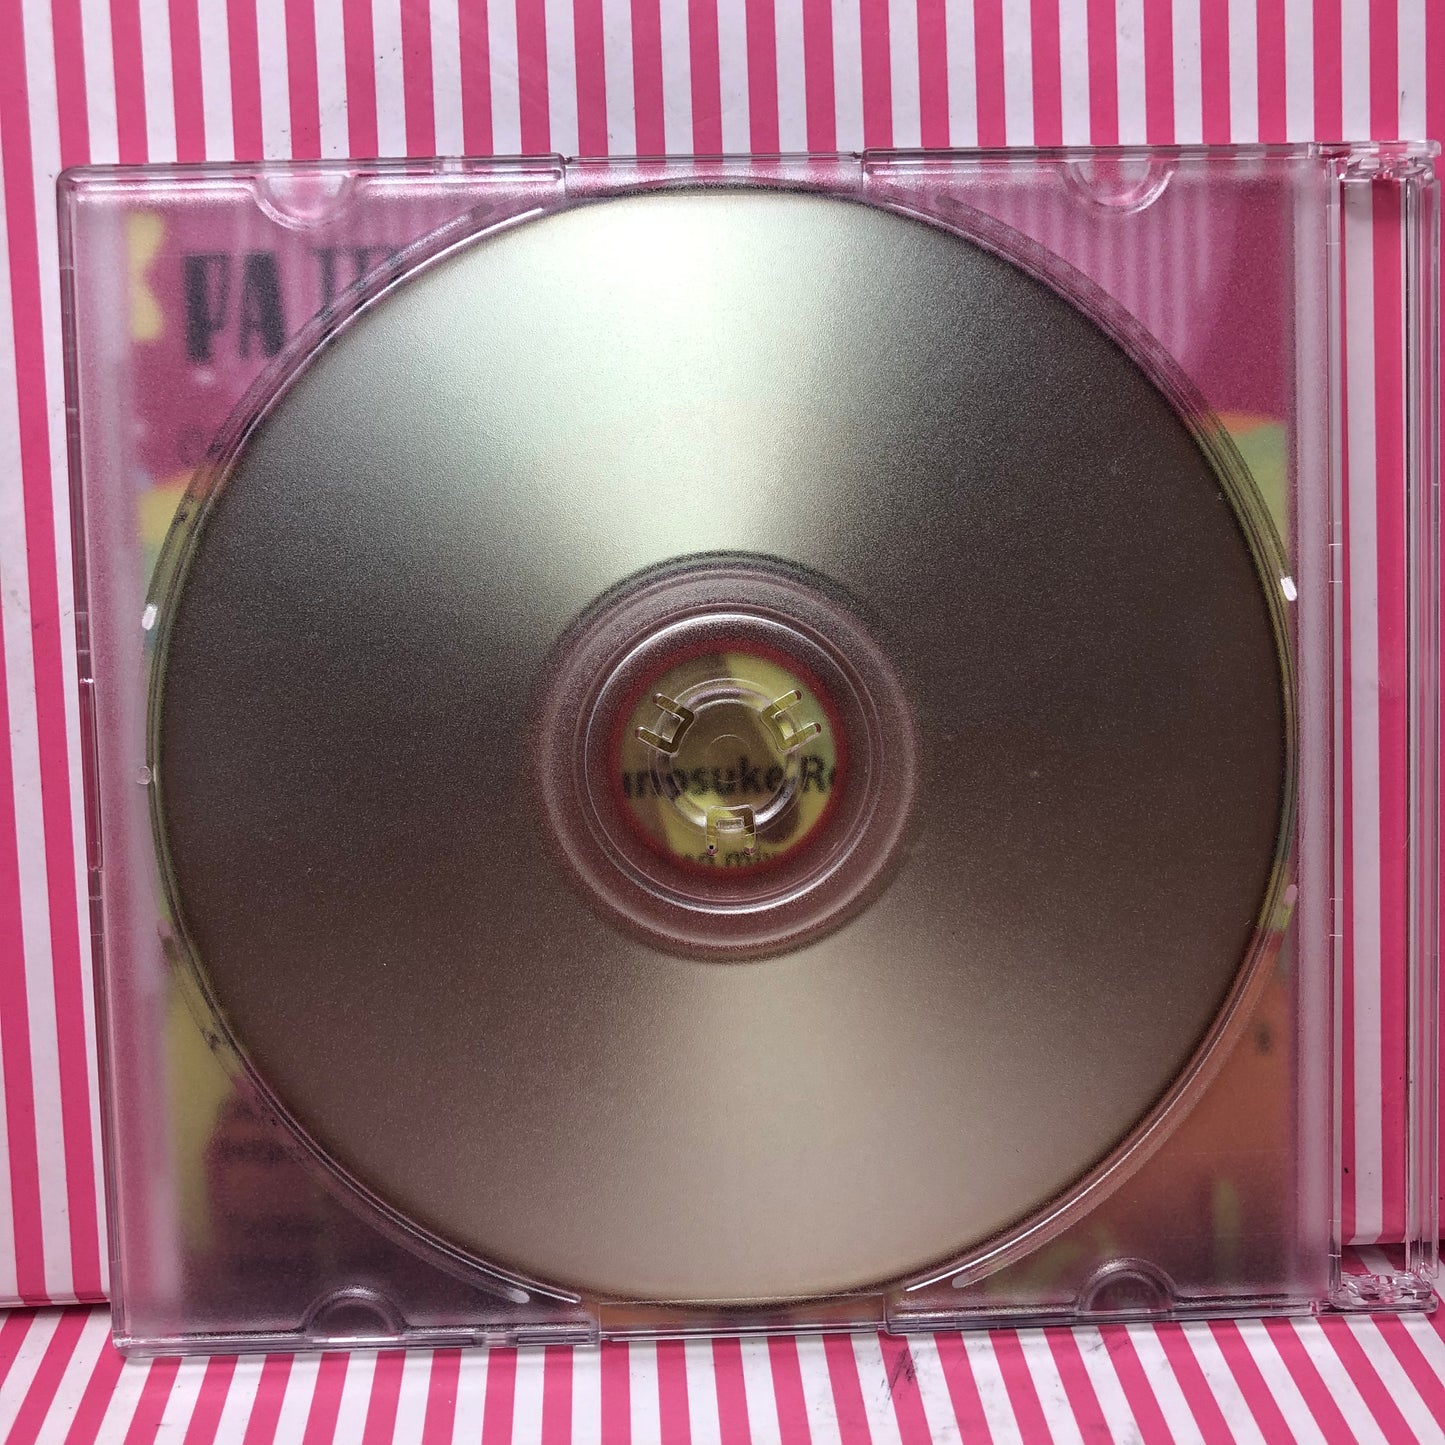 Yunosuke - PA III. SENSATION EP CD Vocaloid Hatsune Miku